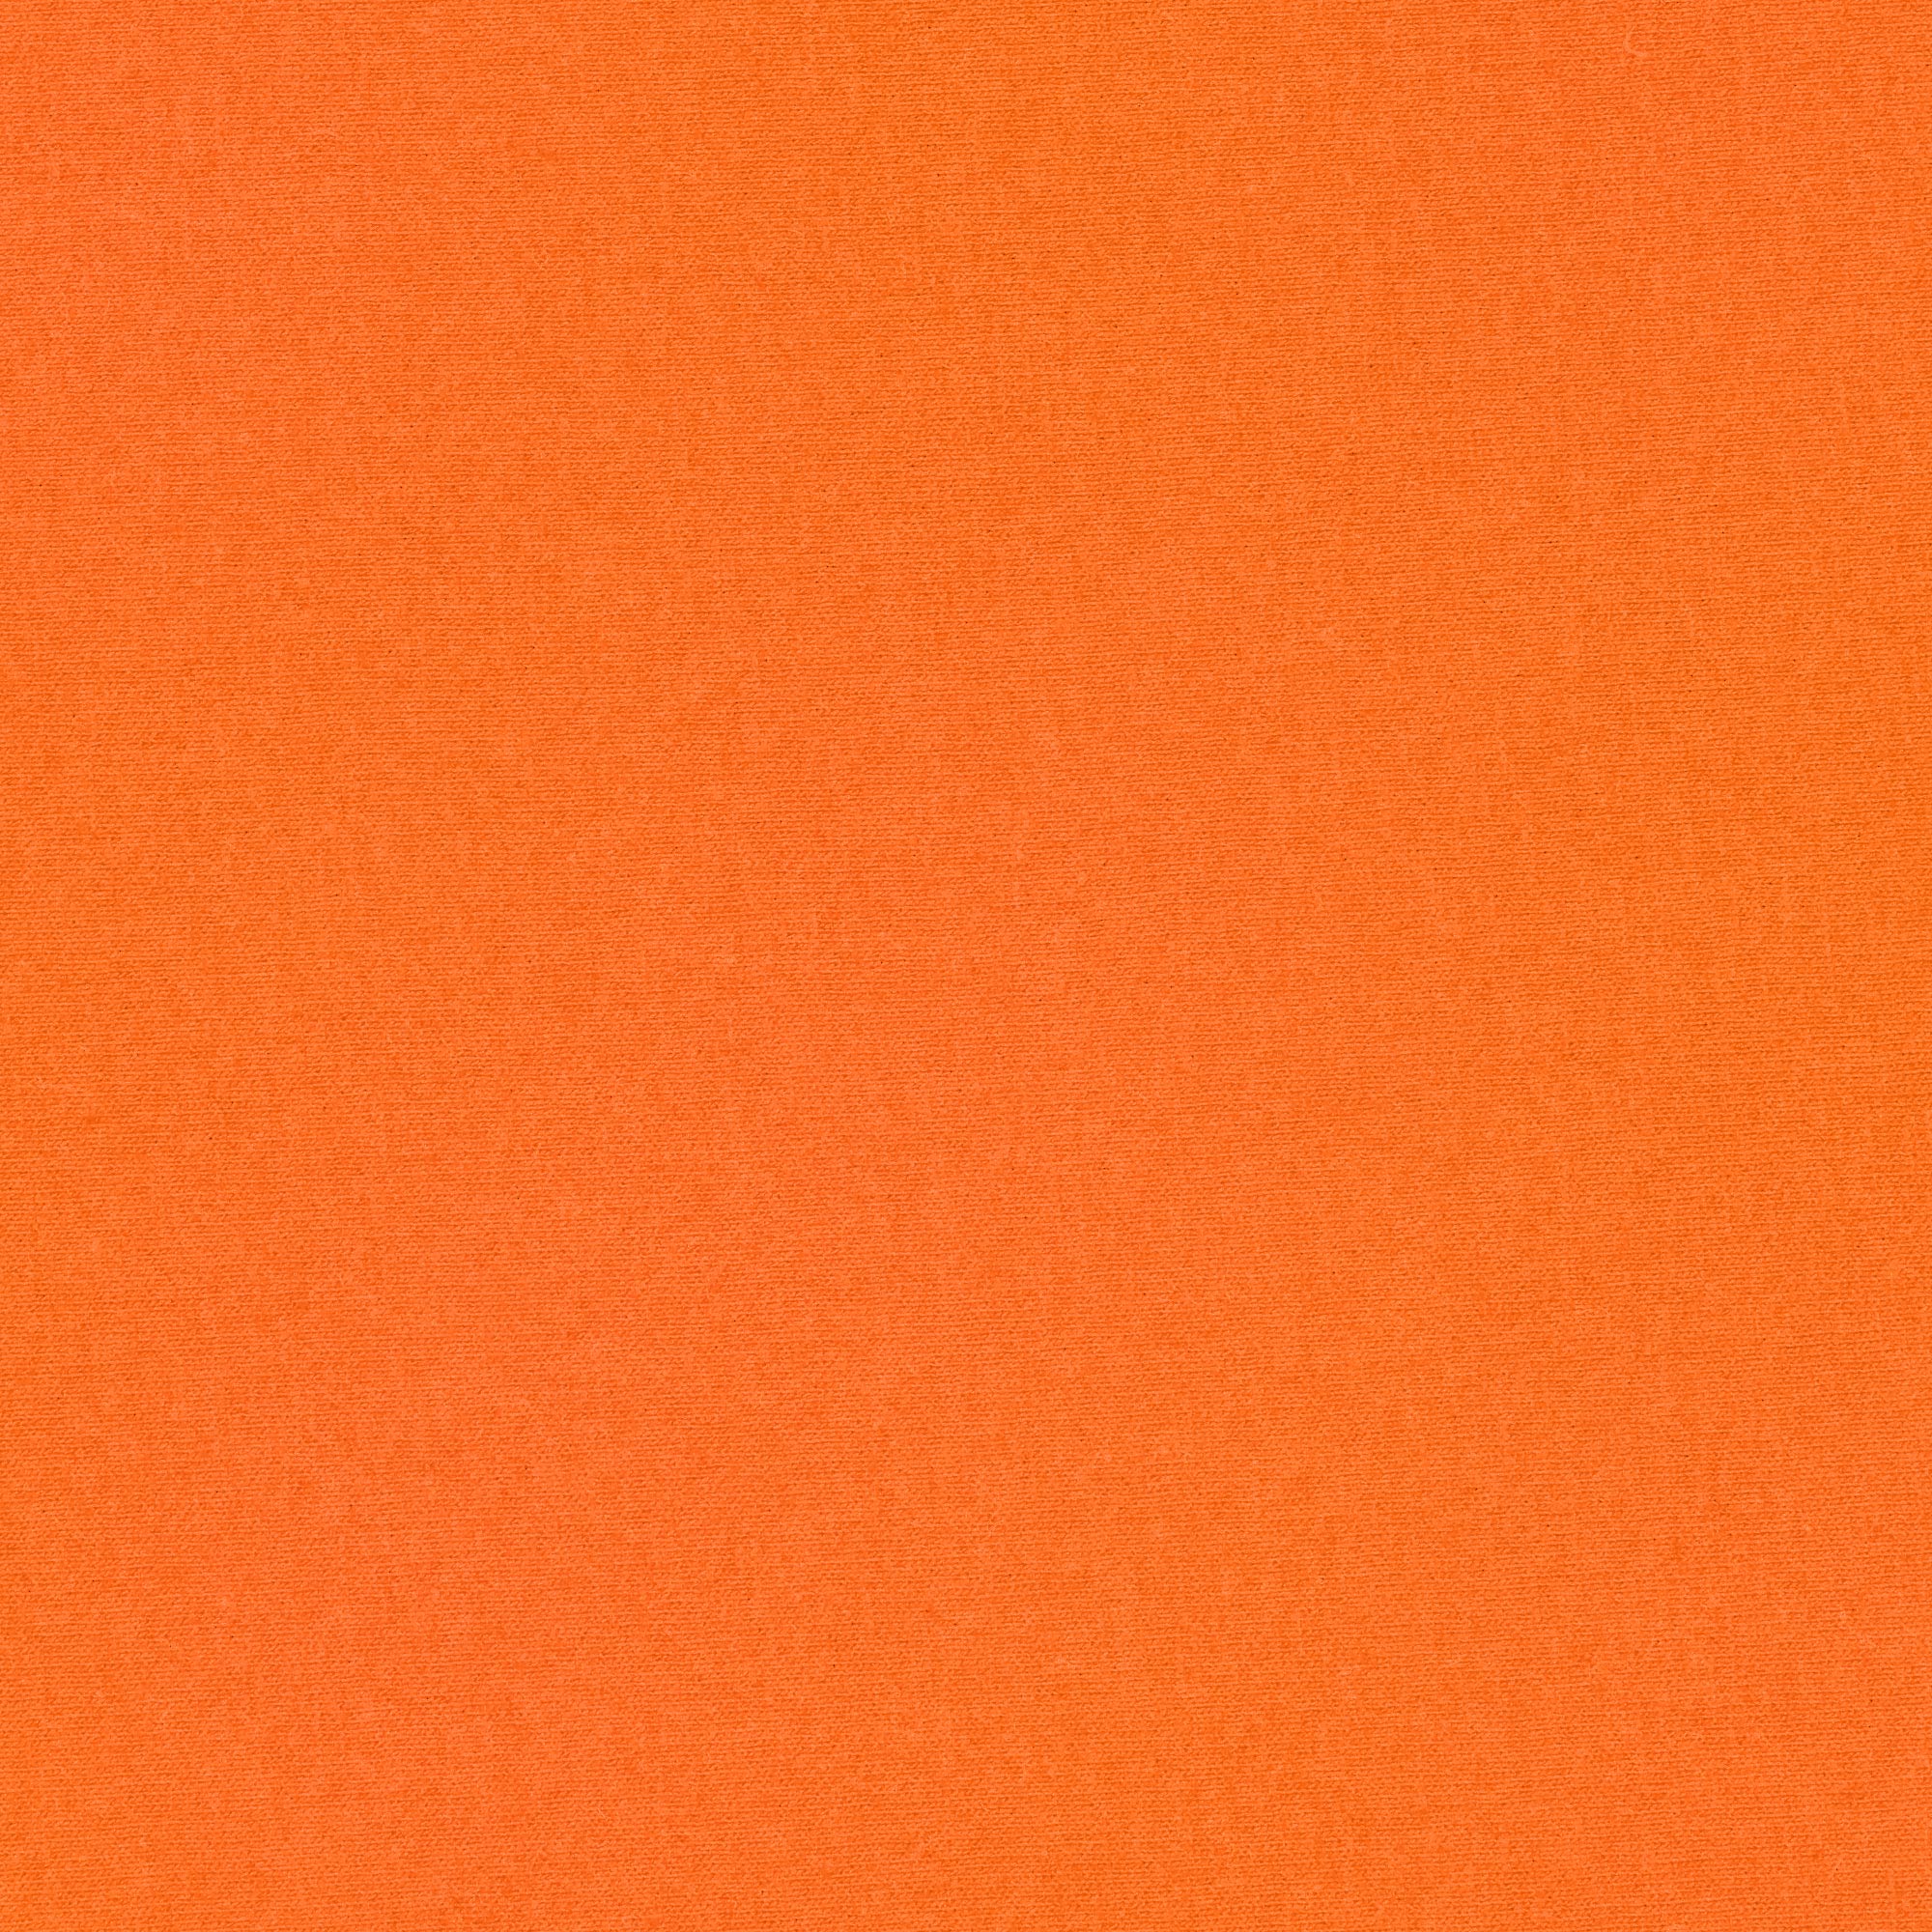 Футболка женская AMADEY classic оранжевая   44-46 M, цвет оранжевый, размер M - фото 3